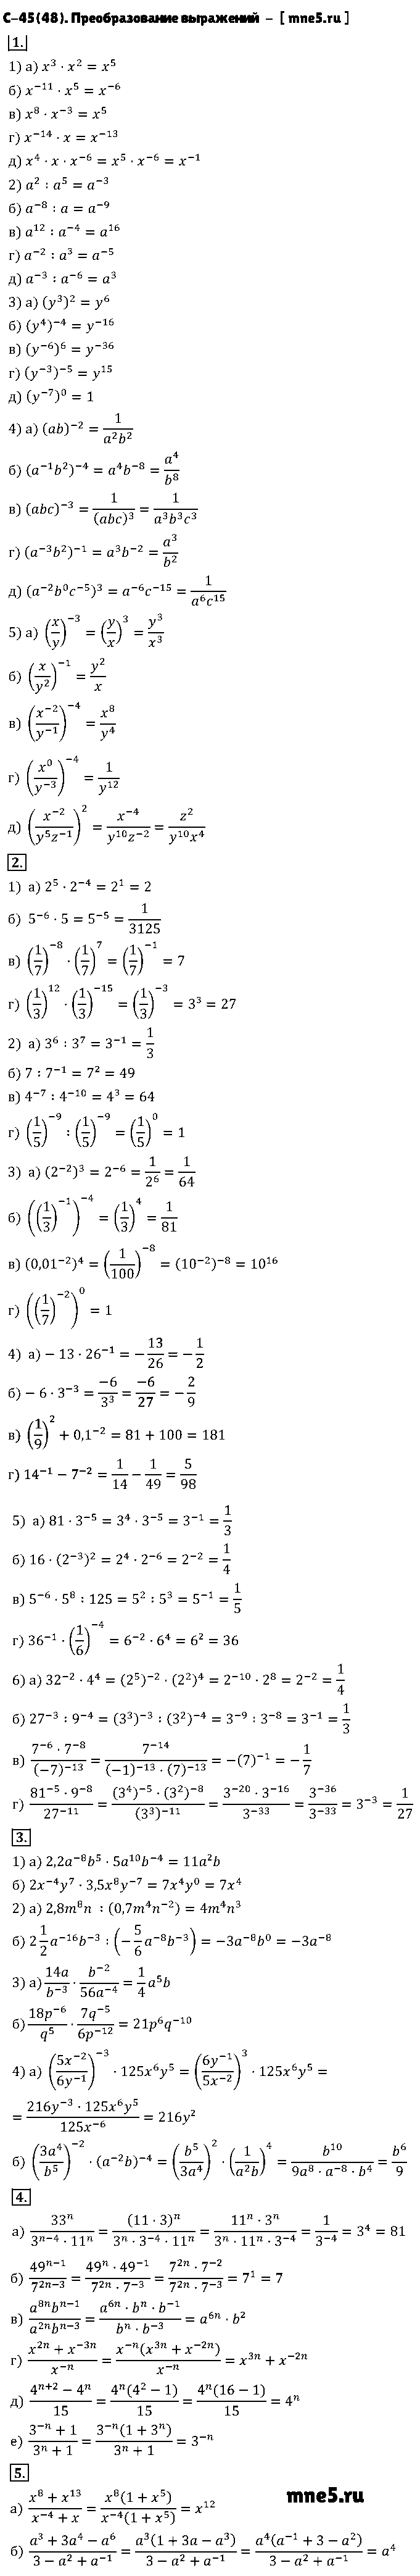 ГДЗ Алгебра 8 класс - С-45(48). Преобразование выражений